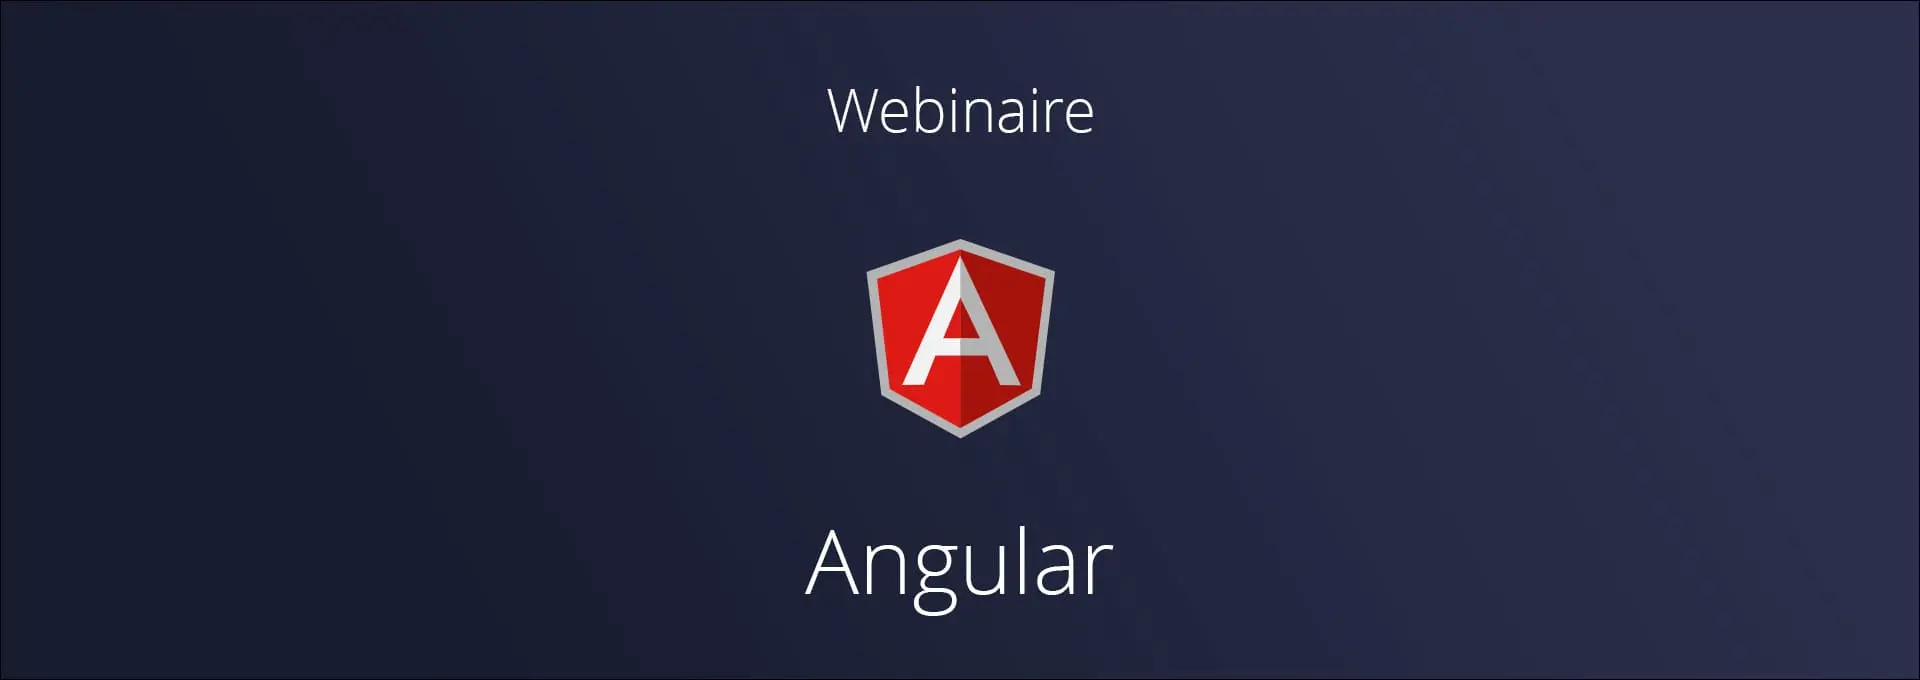 Actualités Webinaires - Pourquoi développer des applications web avec Angular ?